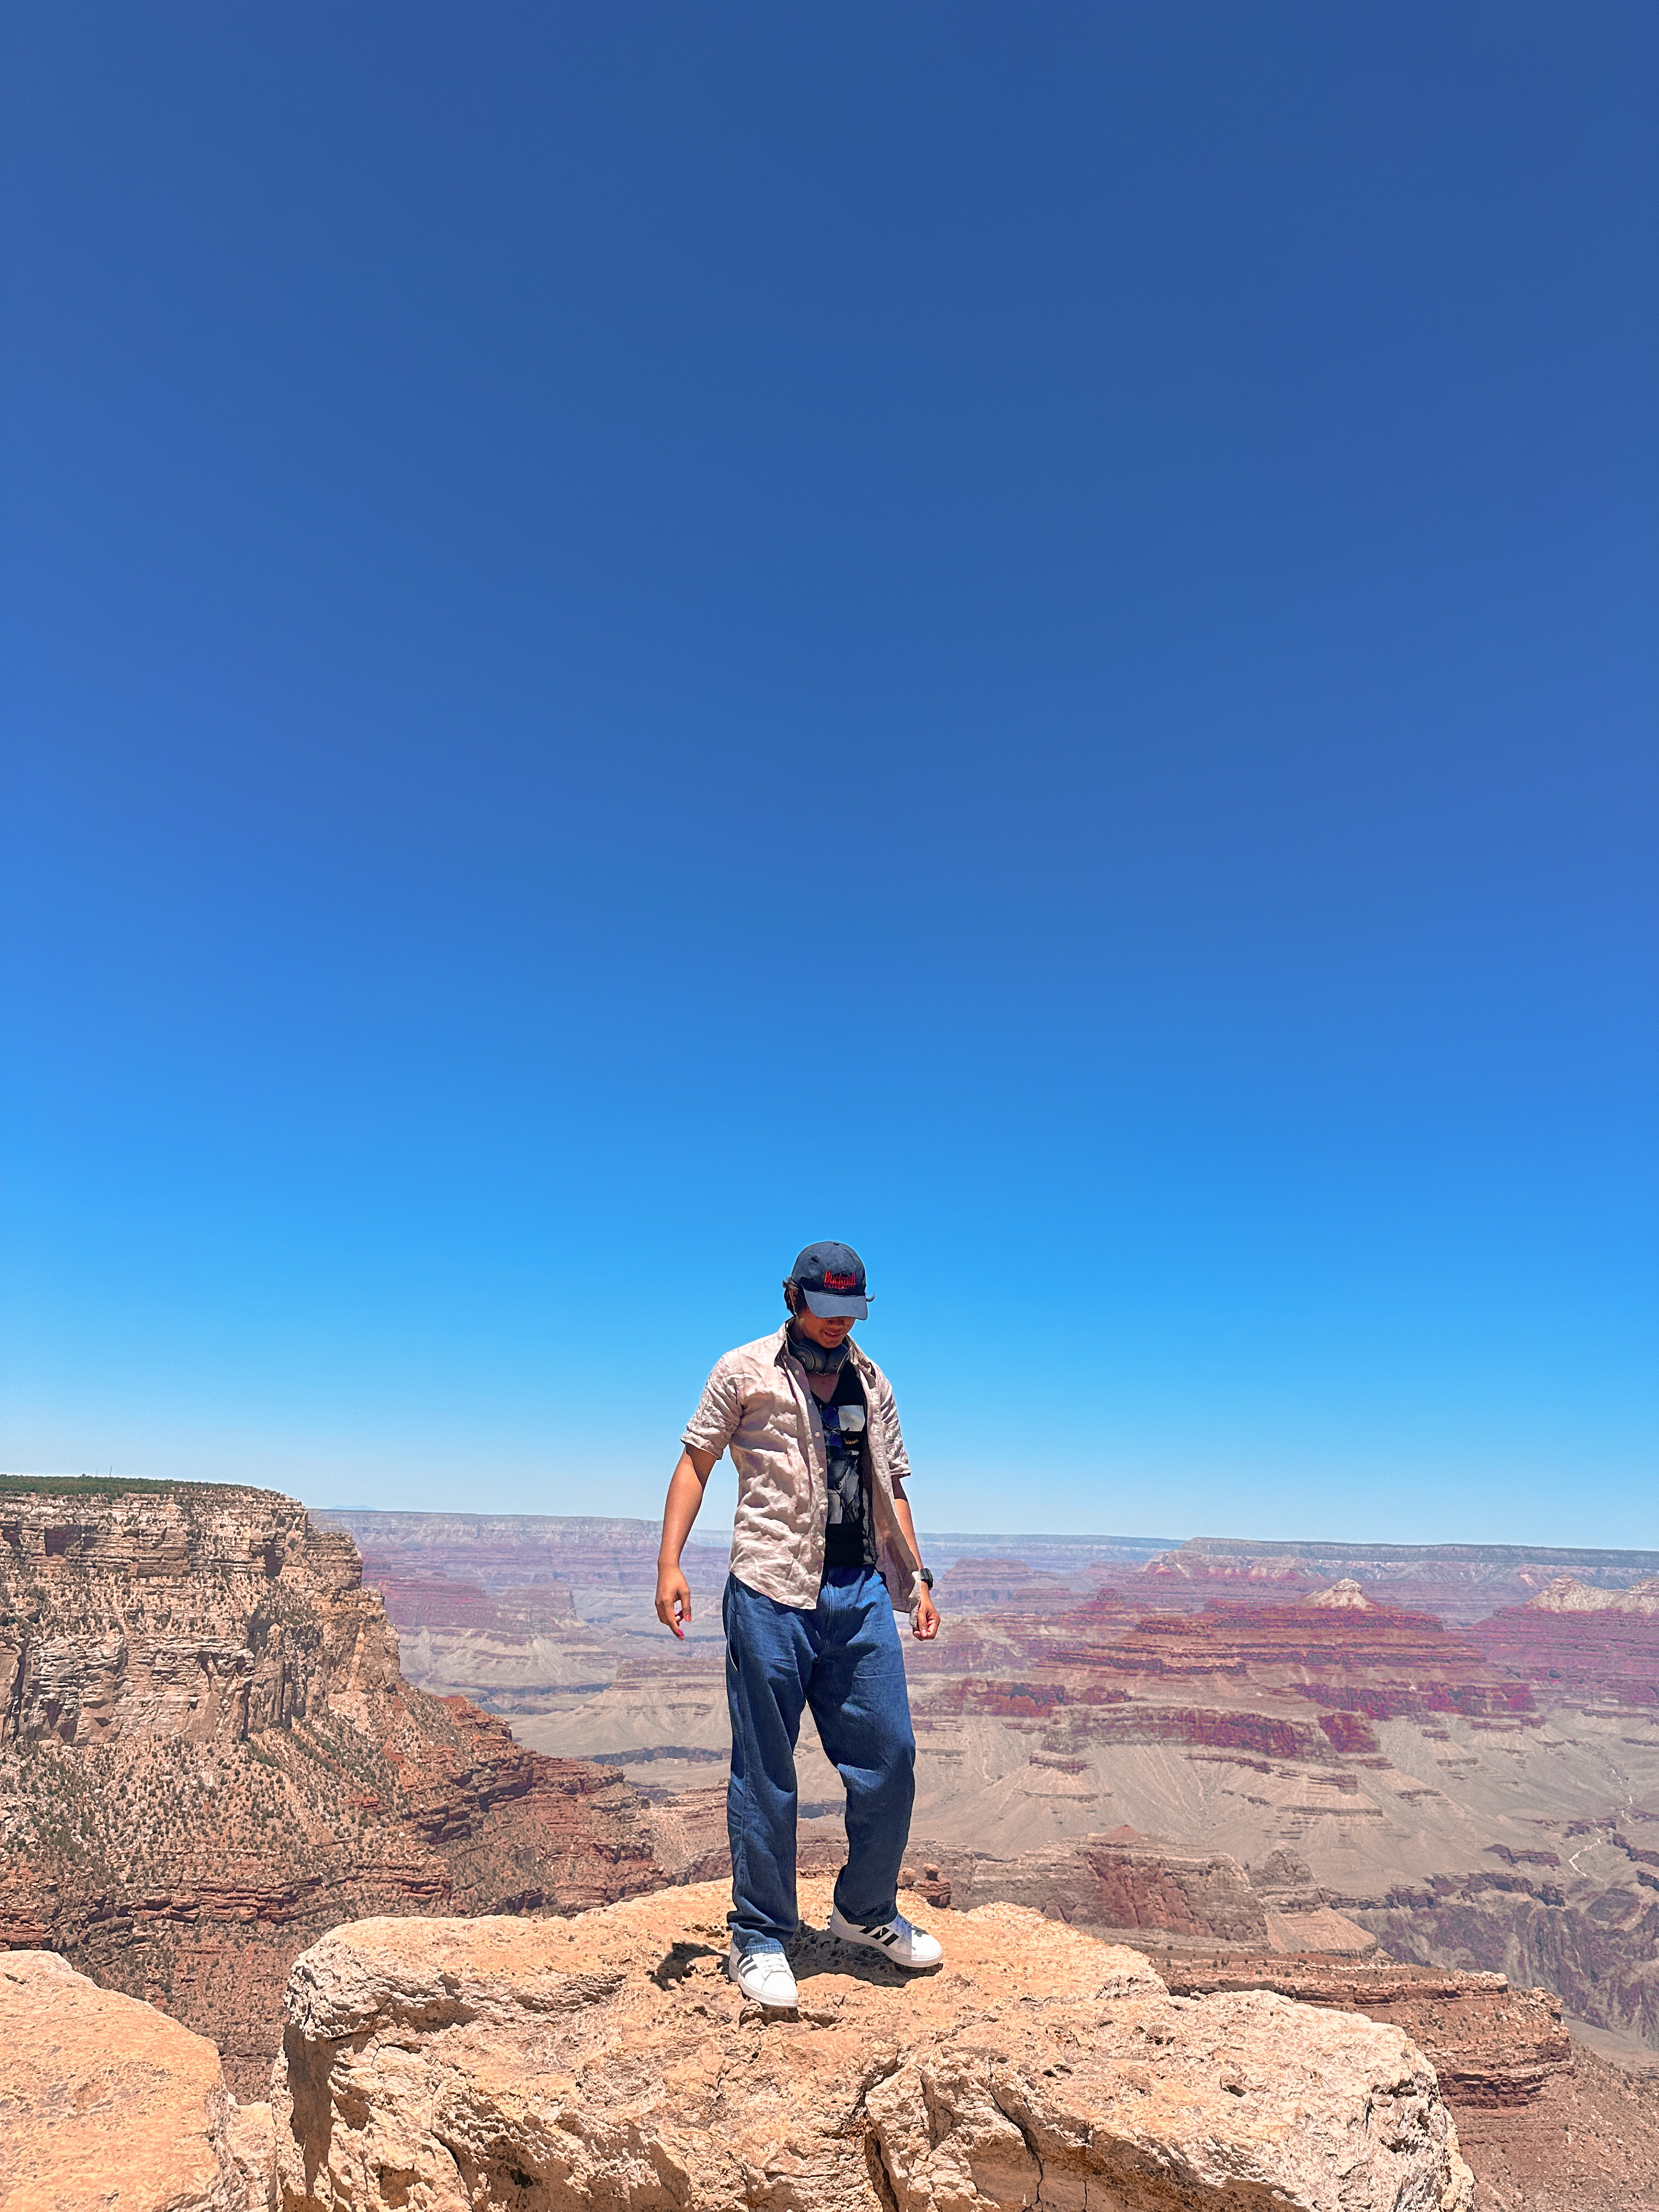 Nolan at Grand Canyon, Arizona